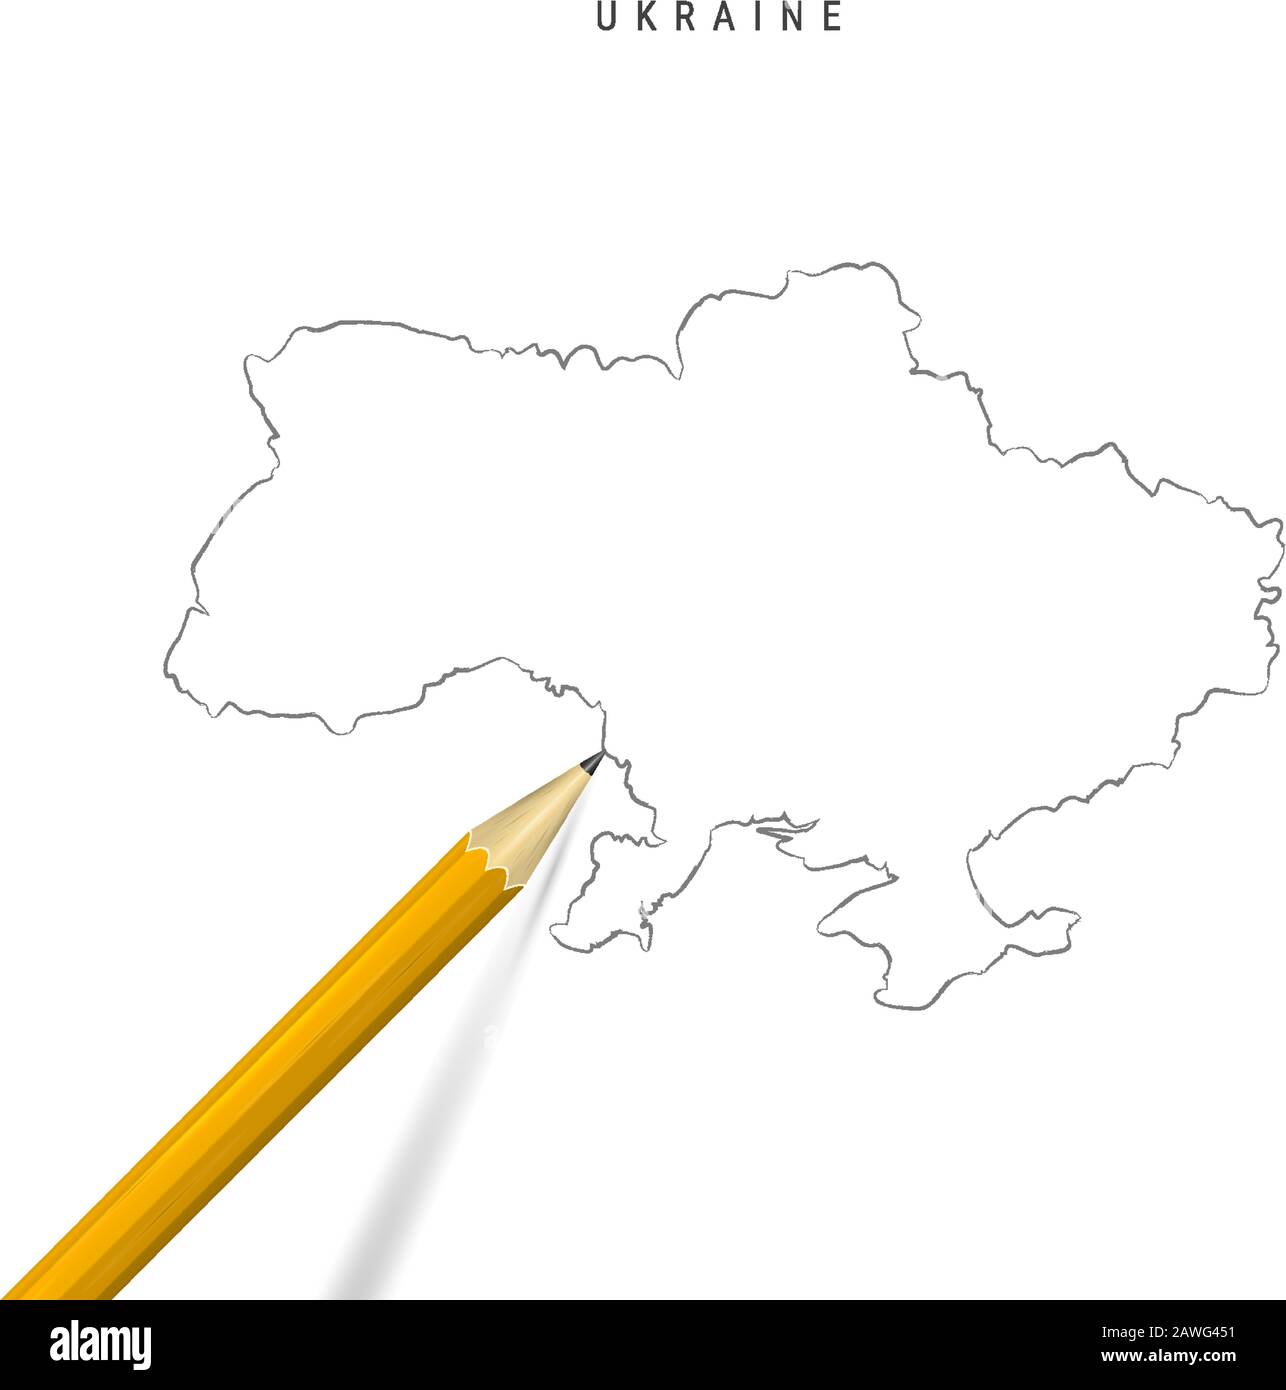 Ukraine Freihandbleistift Skizze Karte isoliert auf weißem Hintergrund. Leere, handgezeichnete Vektorkarte der Ukraine. Realistischer 3D-Bleistift mit weichem Schatten. Stock Vektor